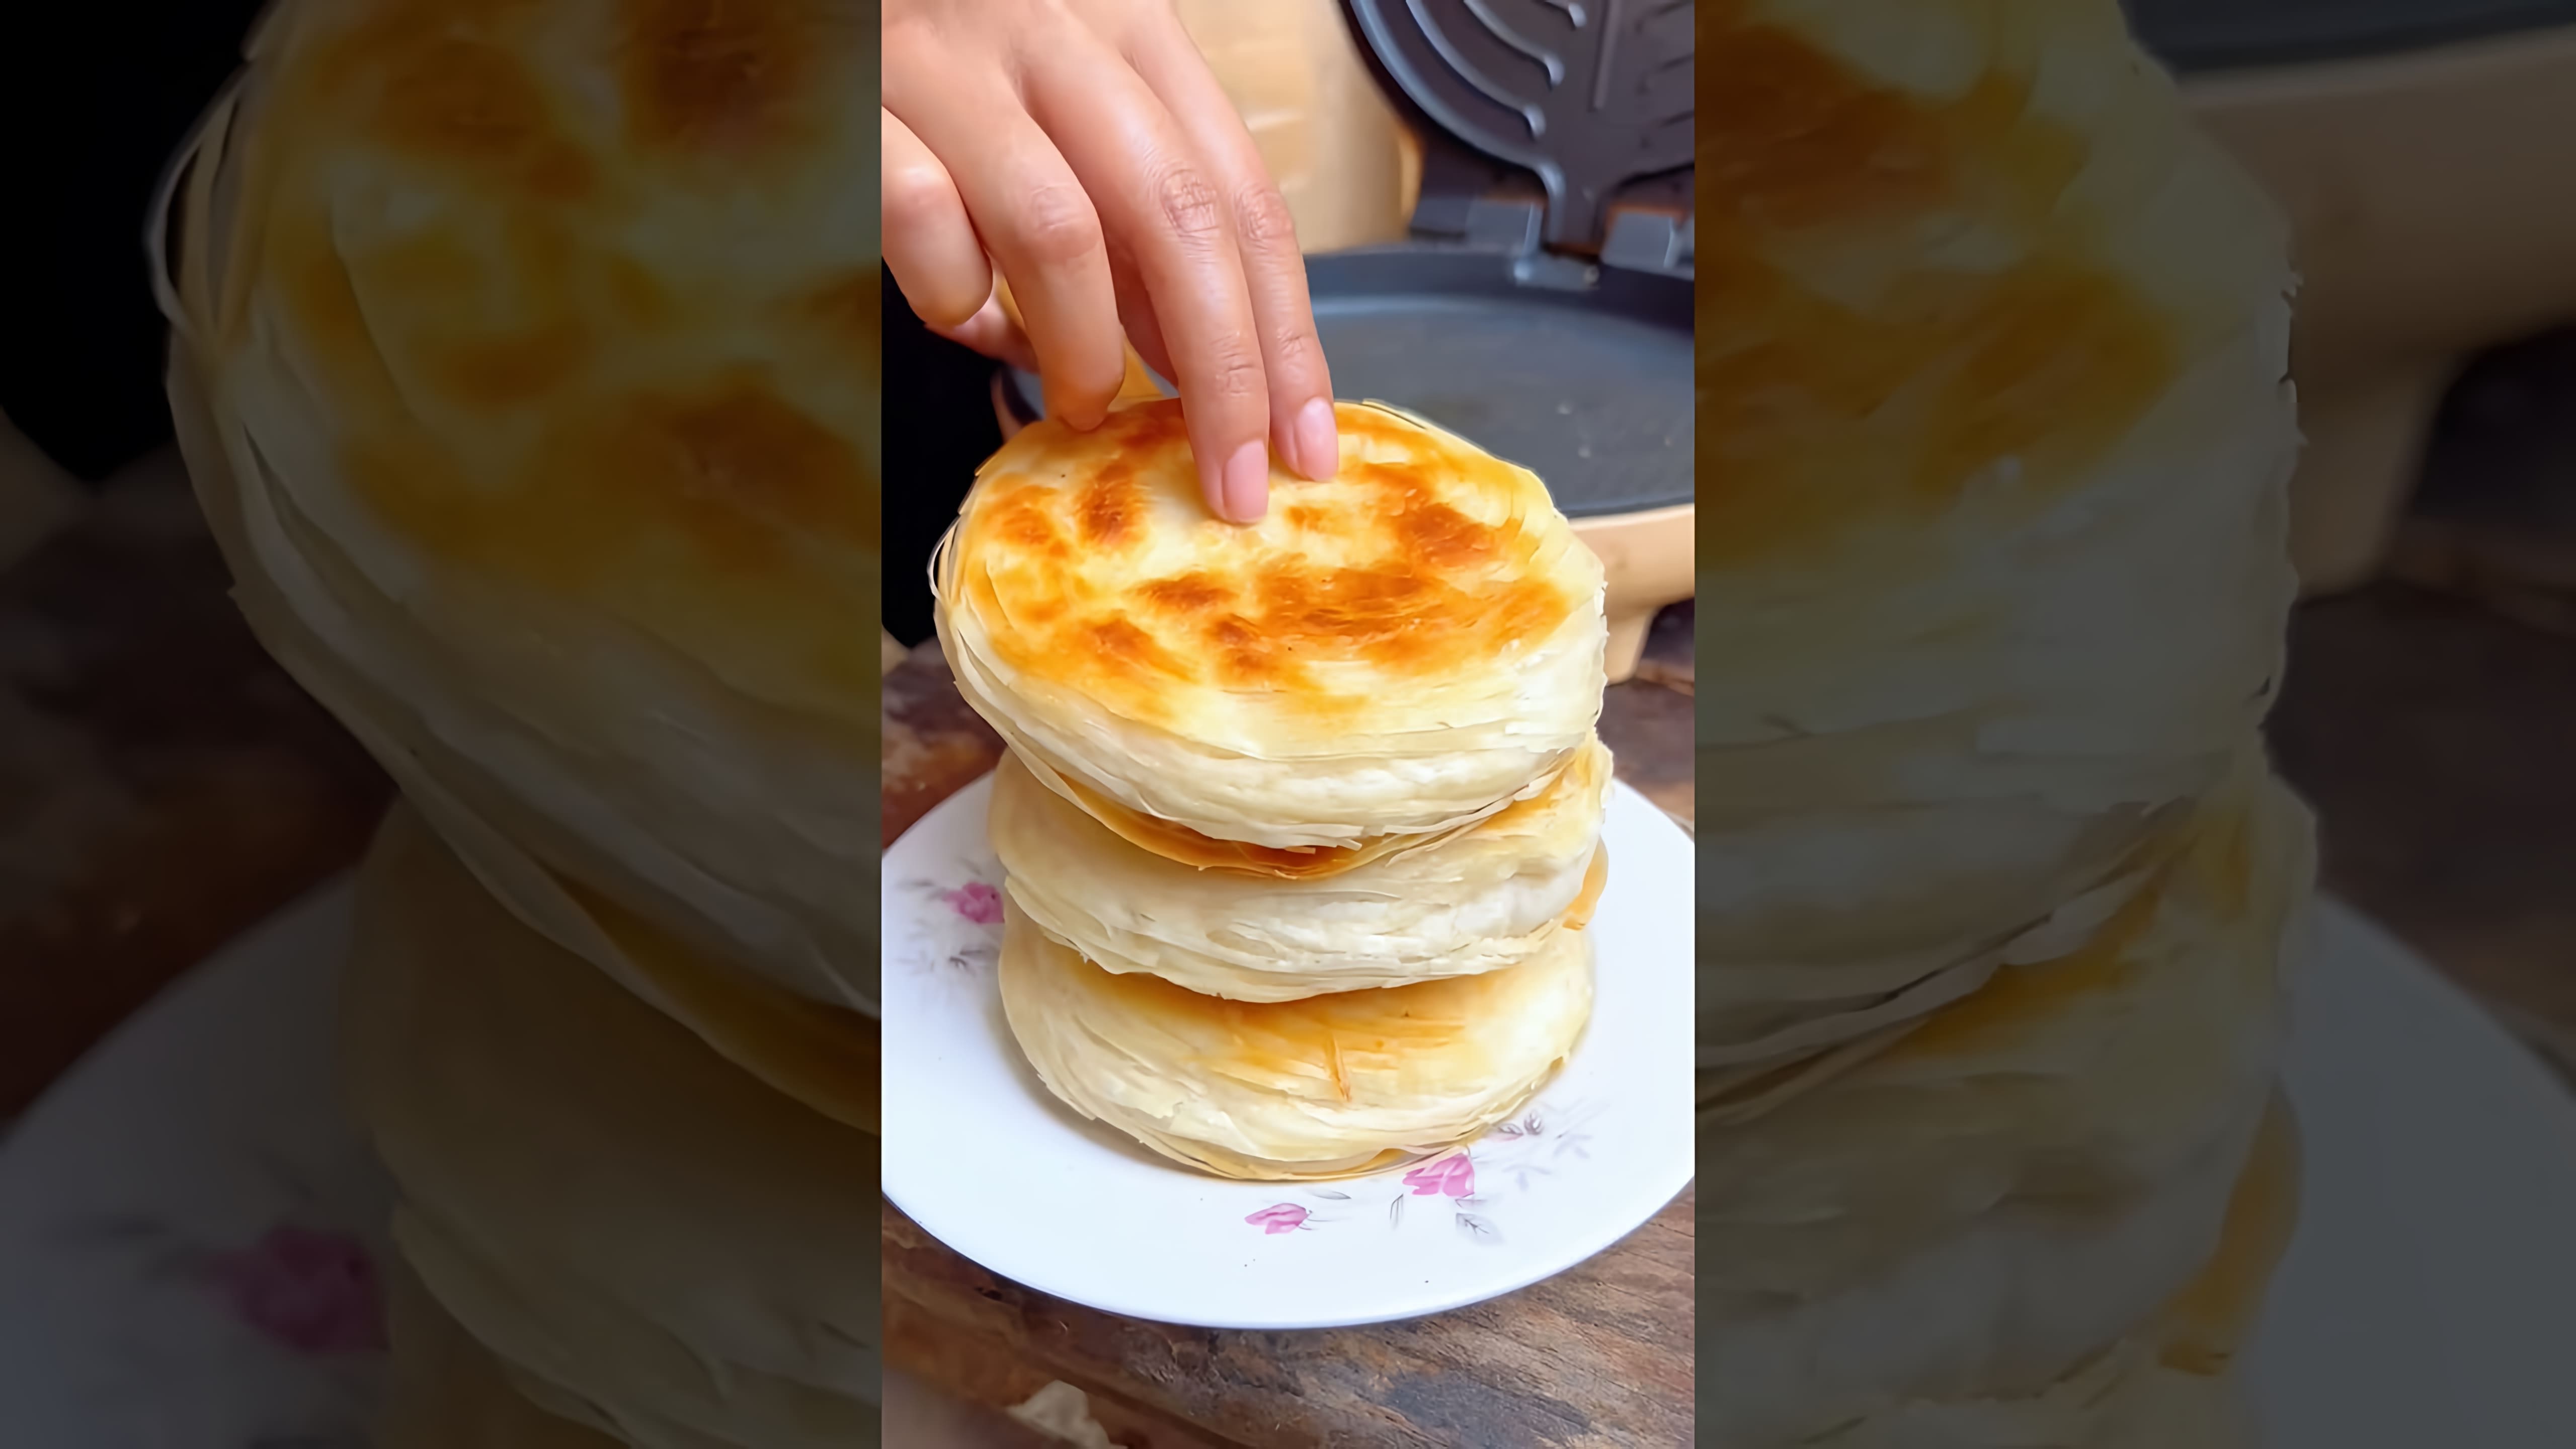 Chinese Burger shredded chilli - это видео-ролик, который демонстрирует процесс приготовления китайского бургера с нарезанным чили